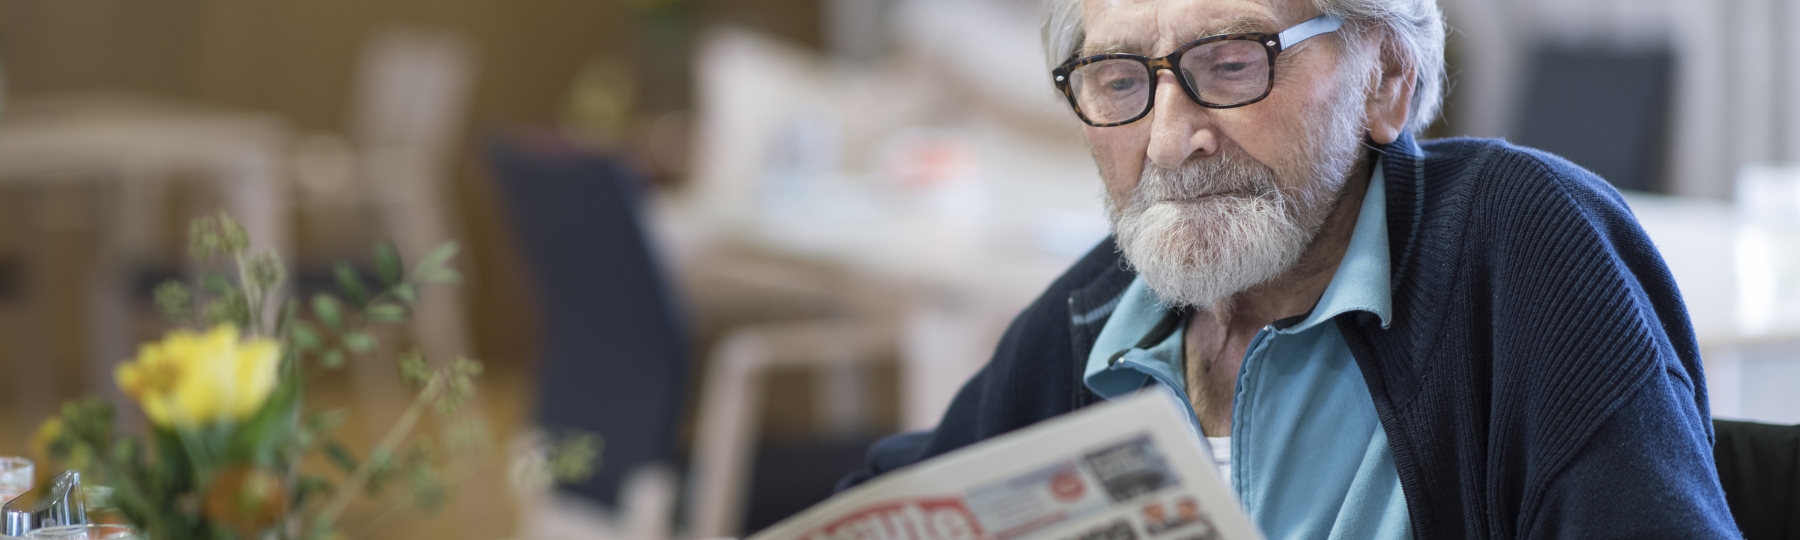 Headerbild - Mann beim Zeitung lesen